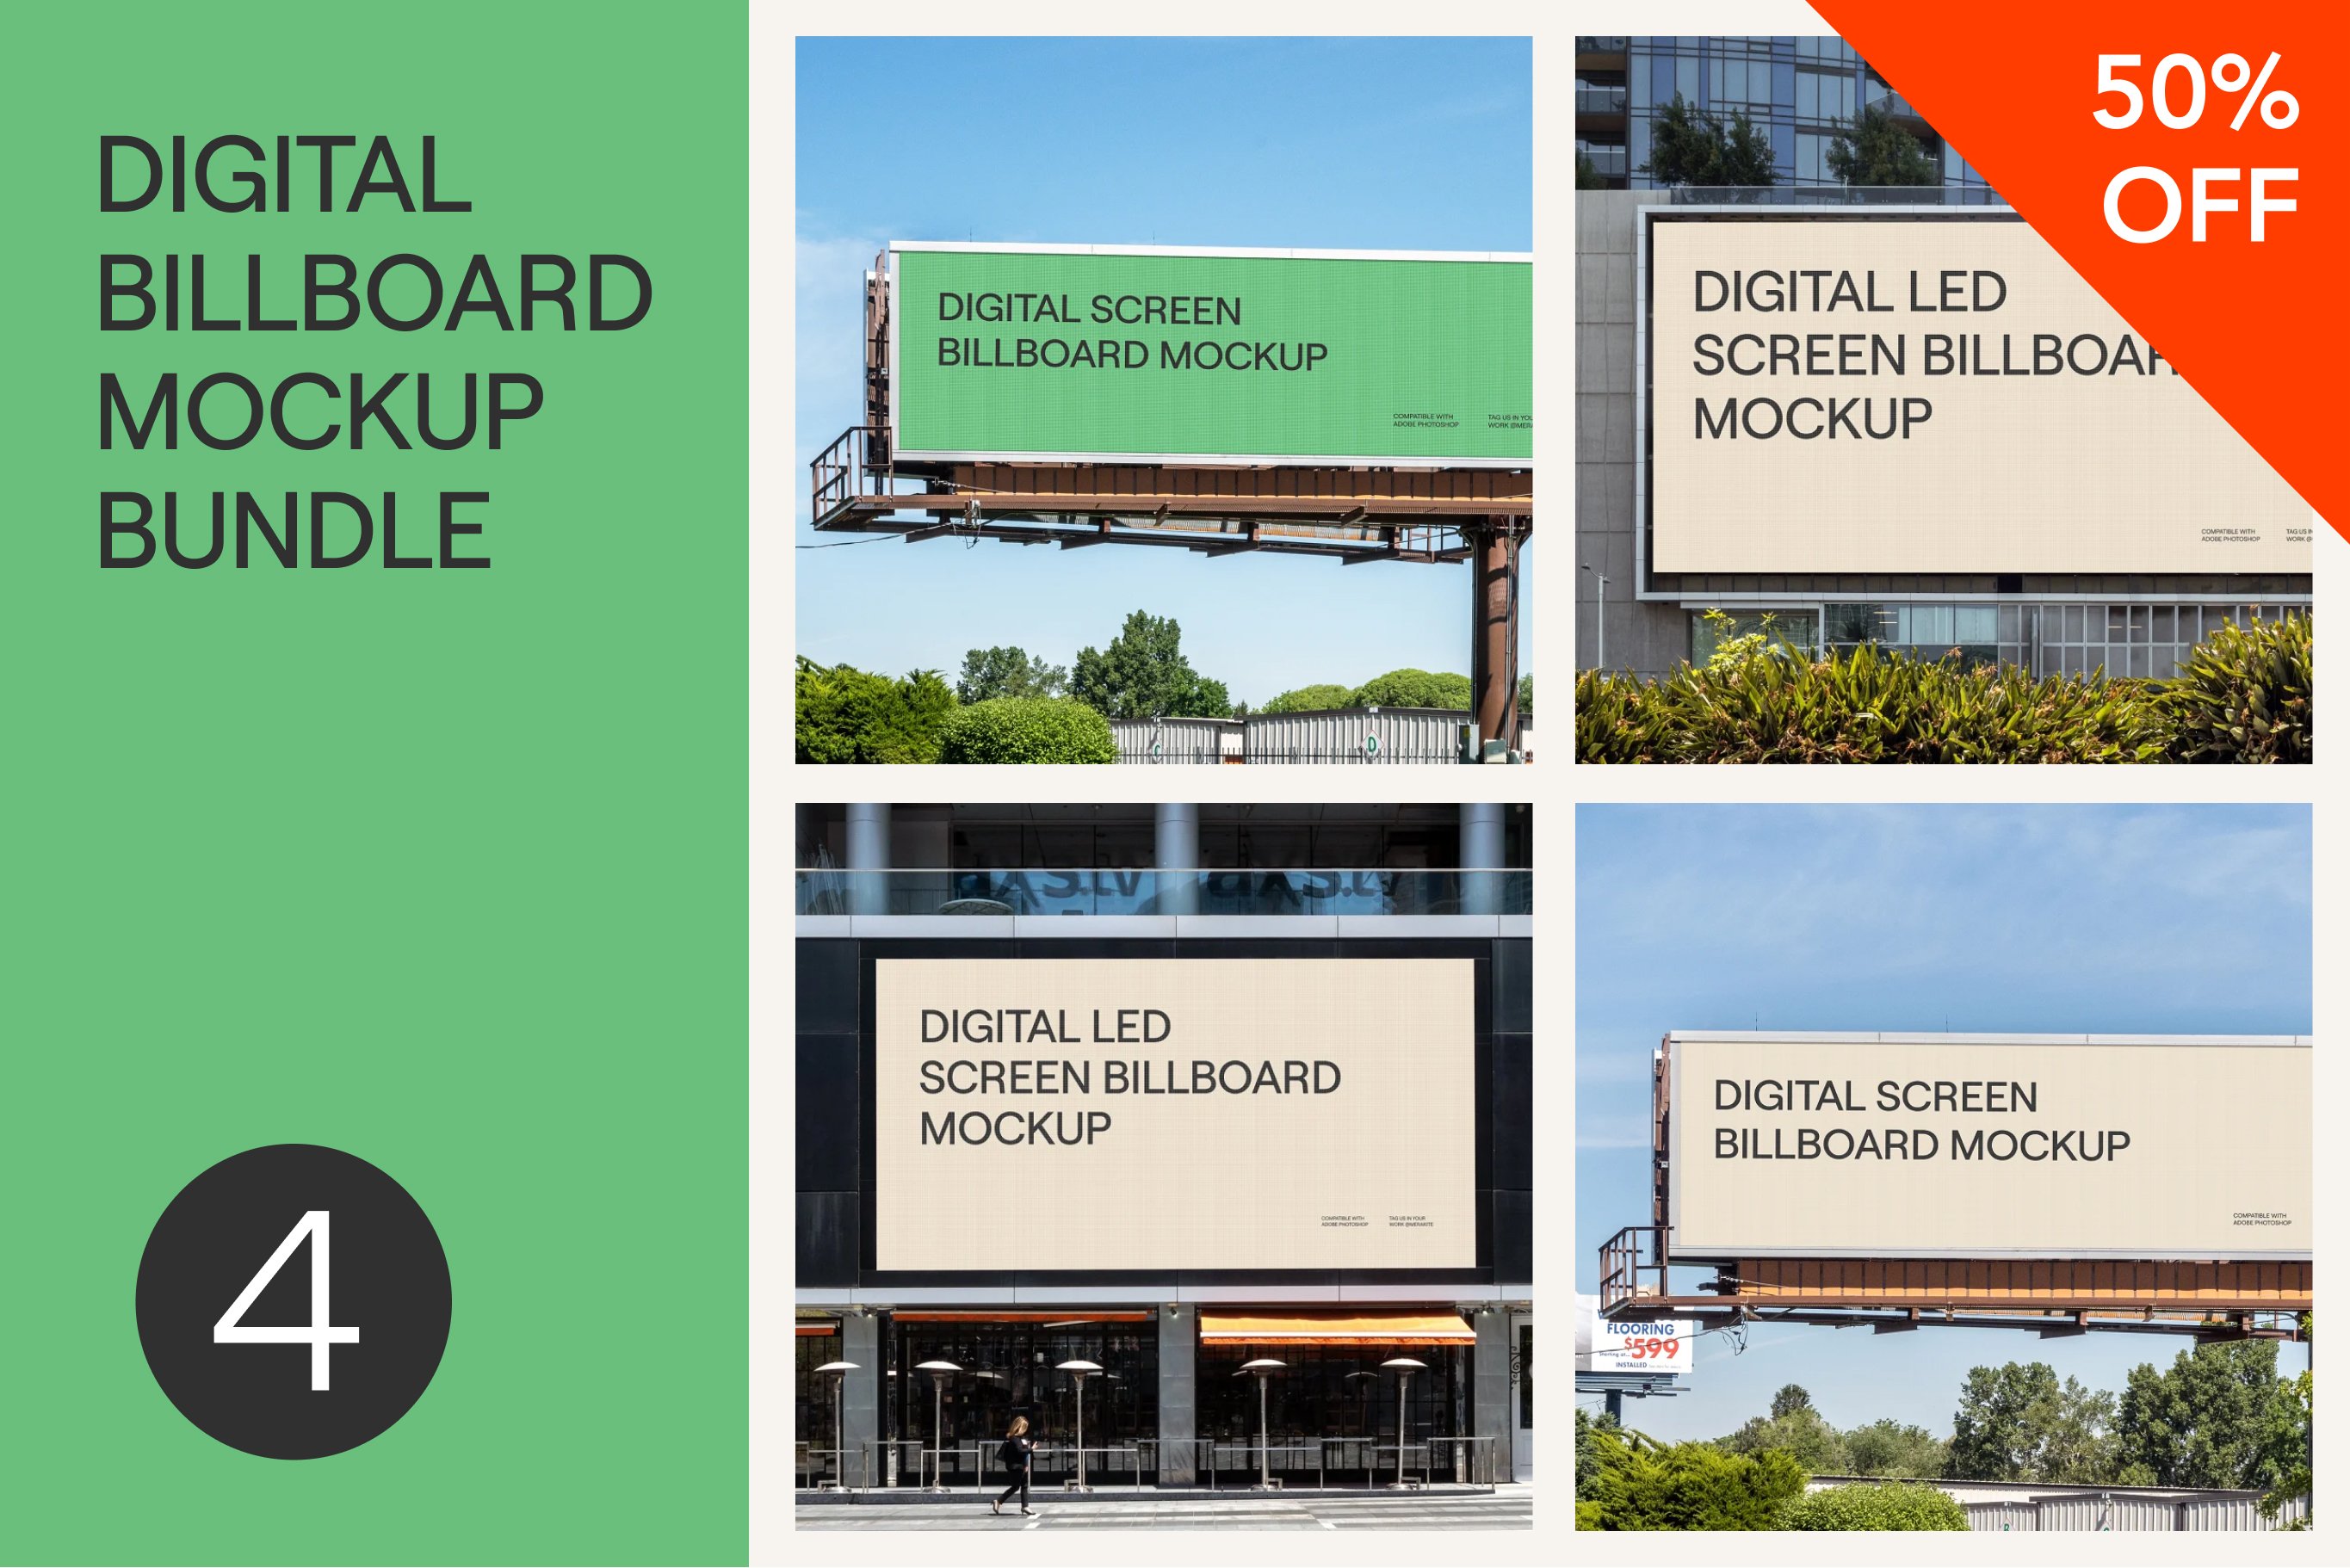 Digital Billboard Mockup PSD Bundle cover image.